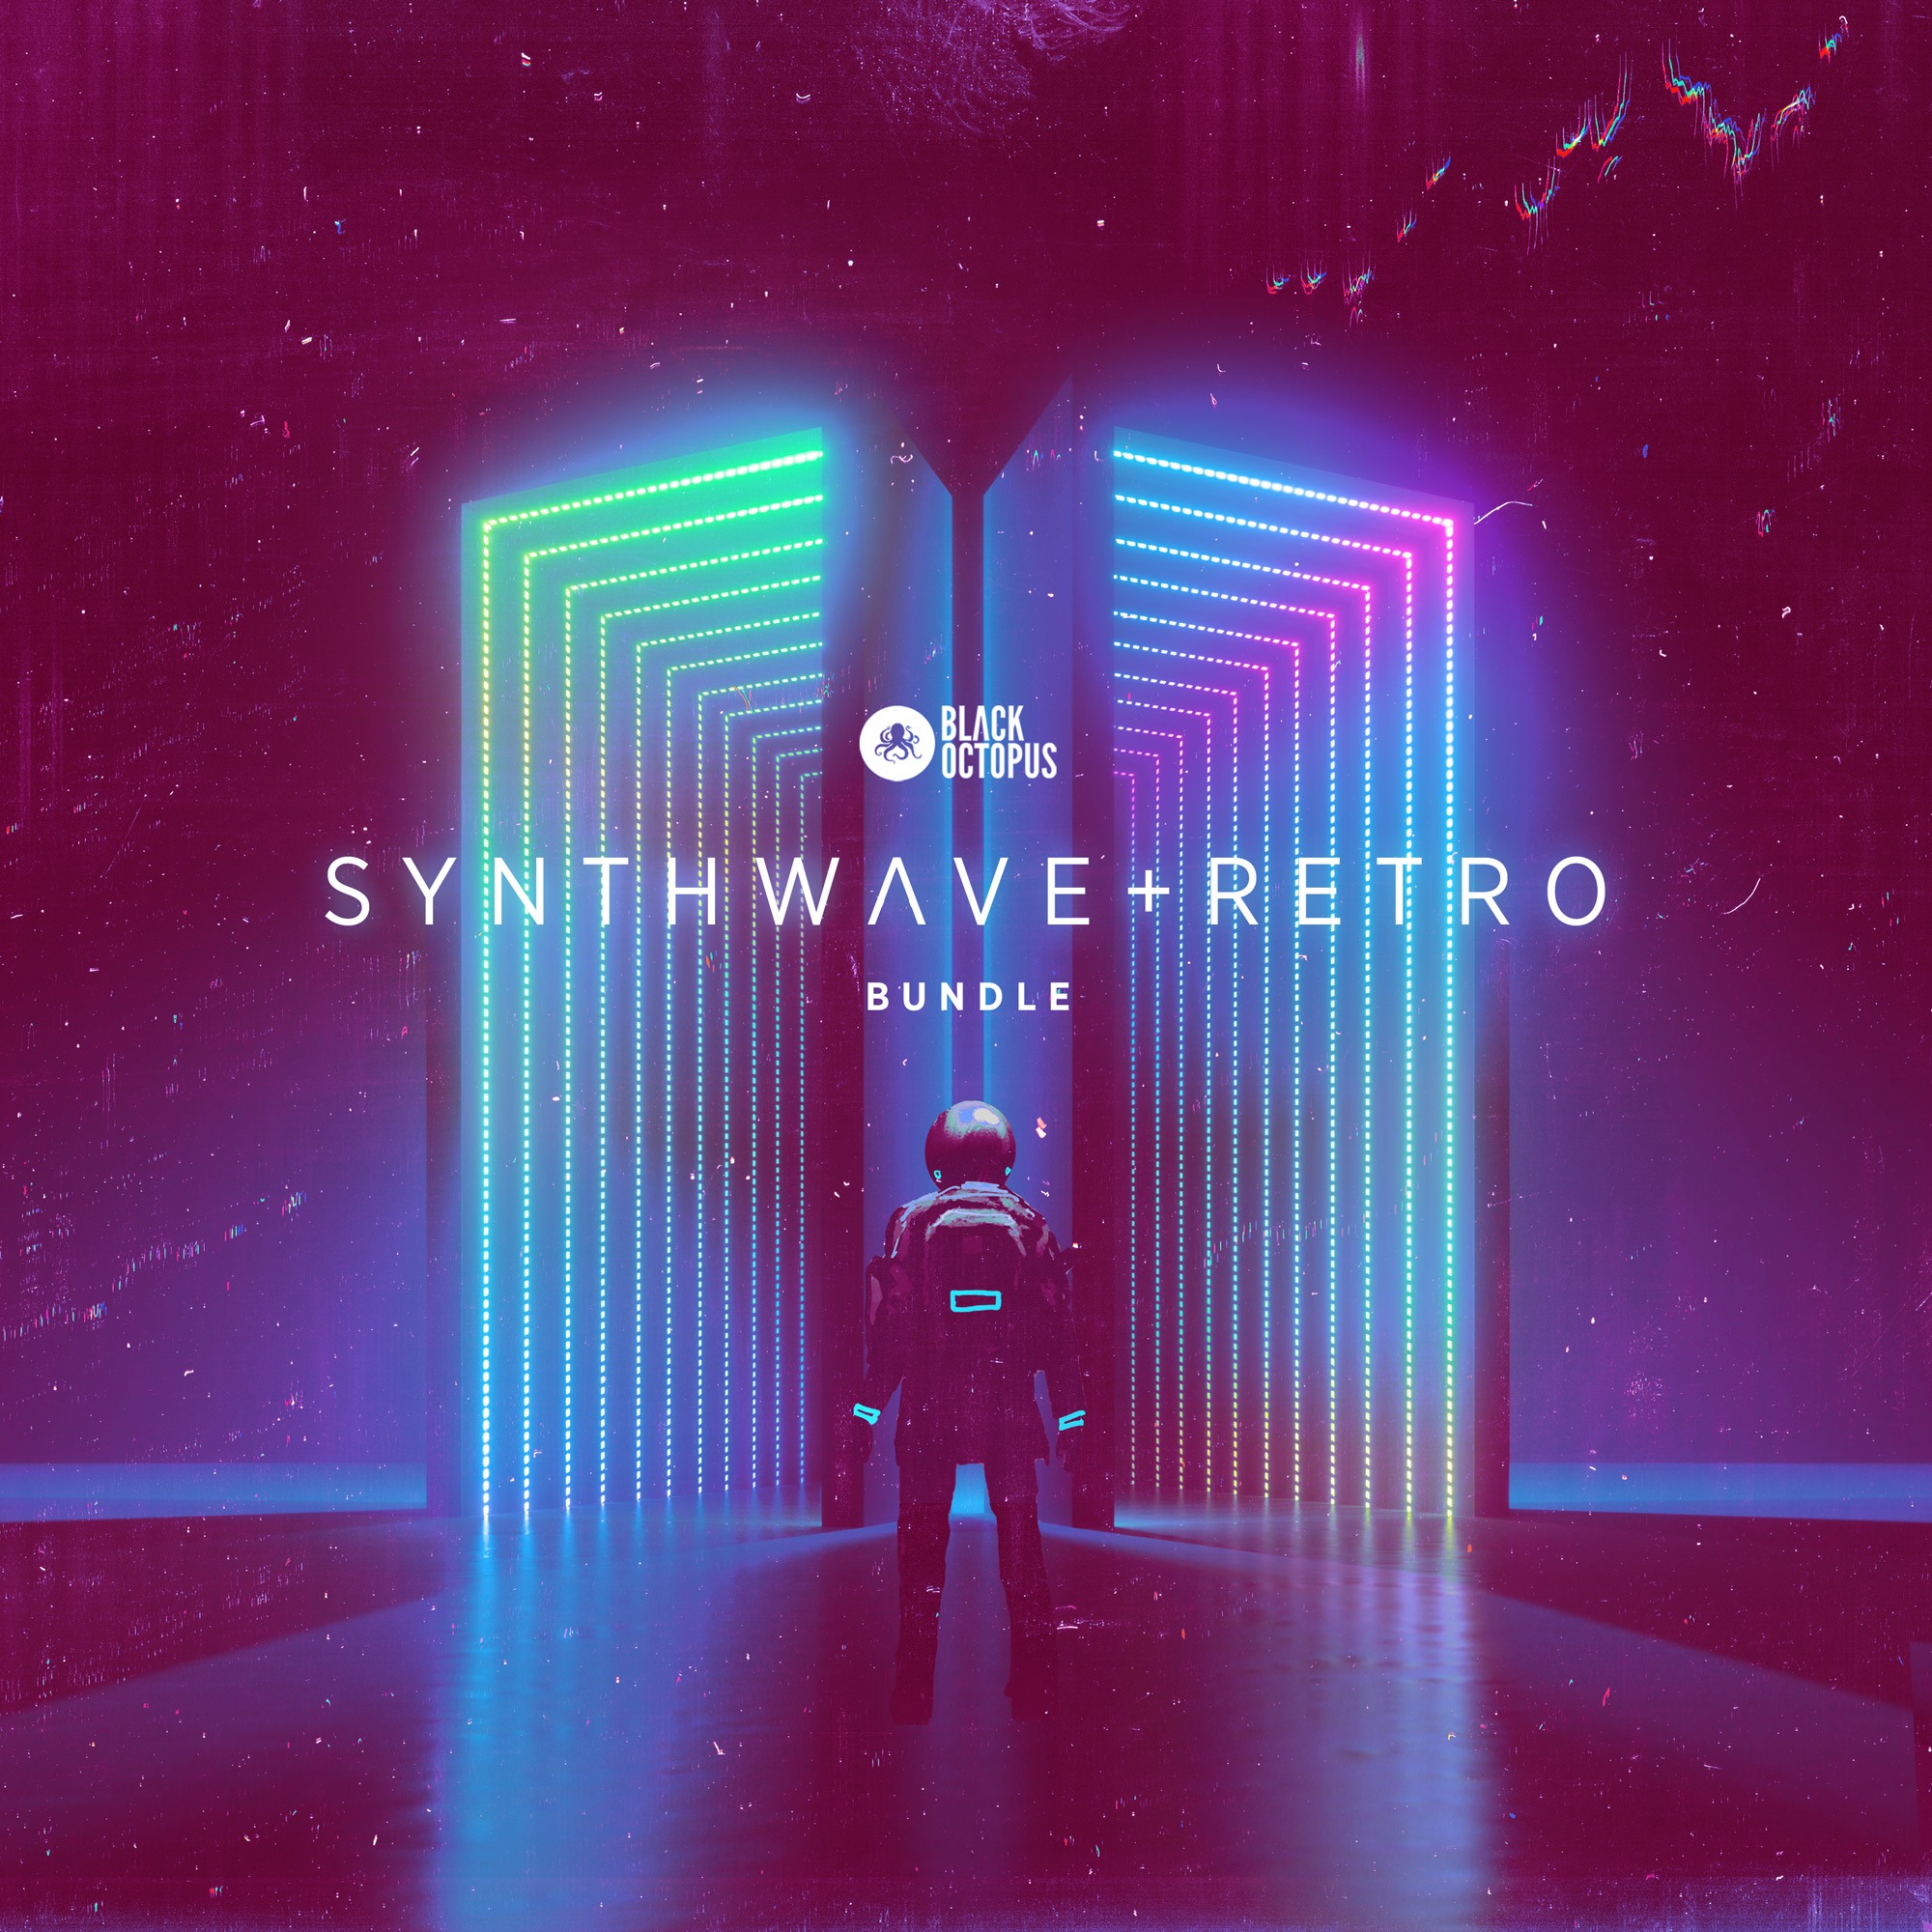 Synthwave & Retro Bundle